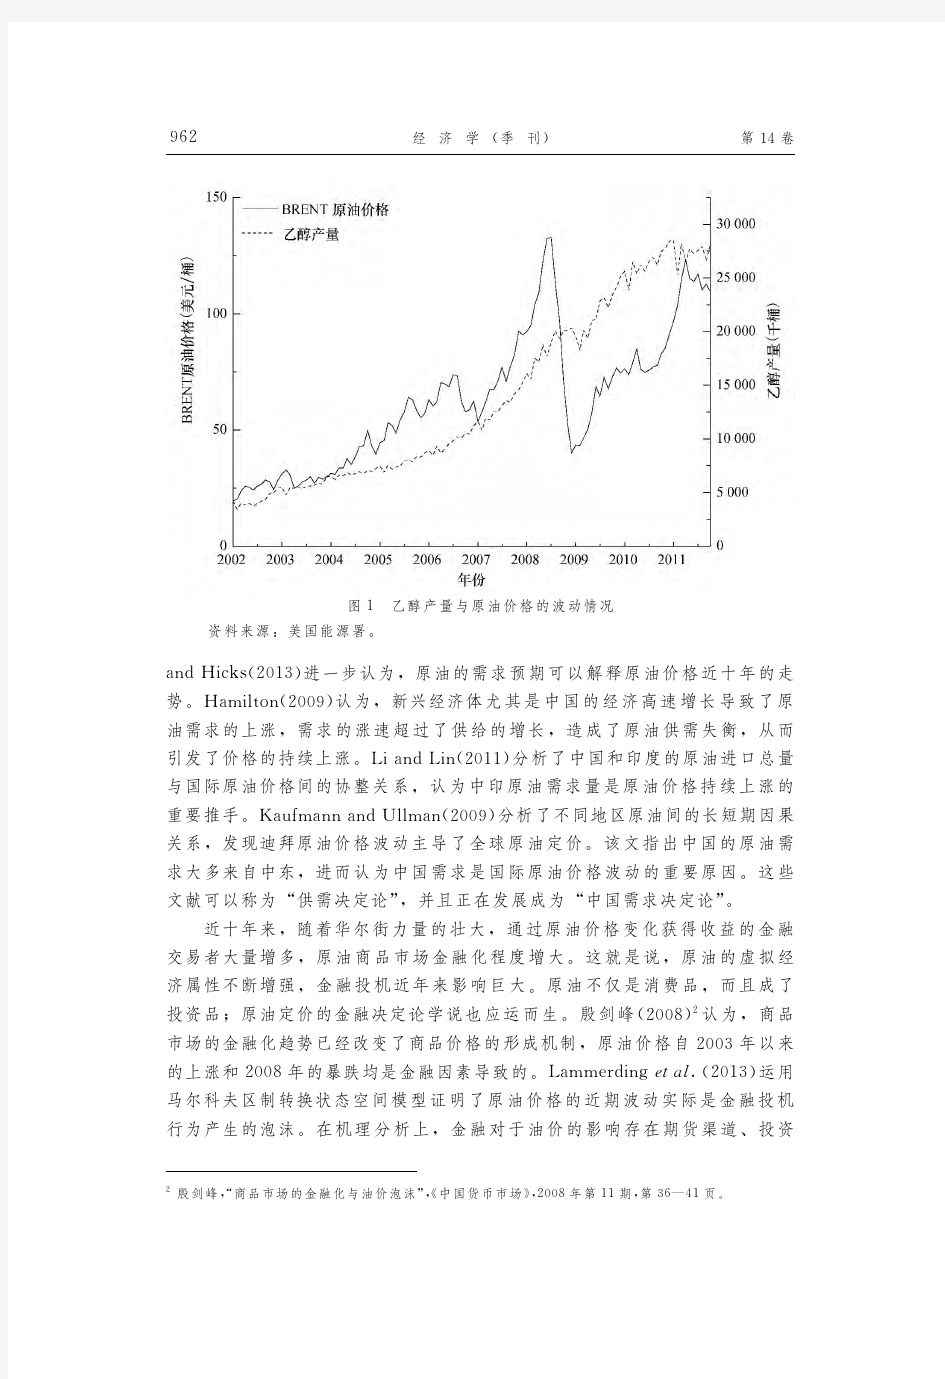 原油价格的影响因素分析_金融投机还是中国需求_田利辉-经济学季刊-201503